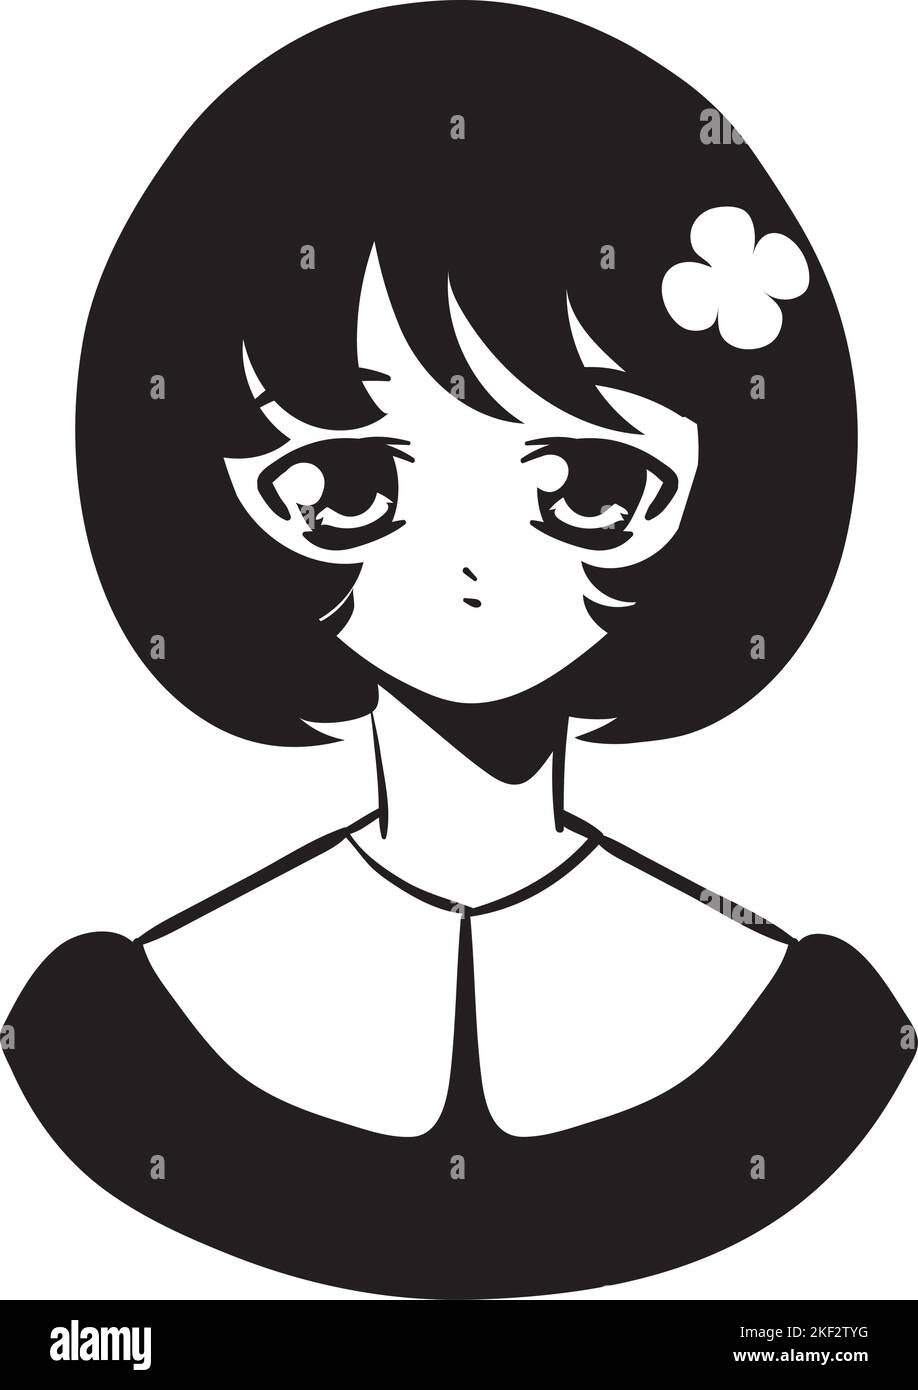 sad anime girl Stock Vector Image & Art - Alamy